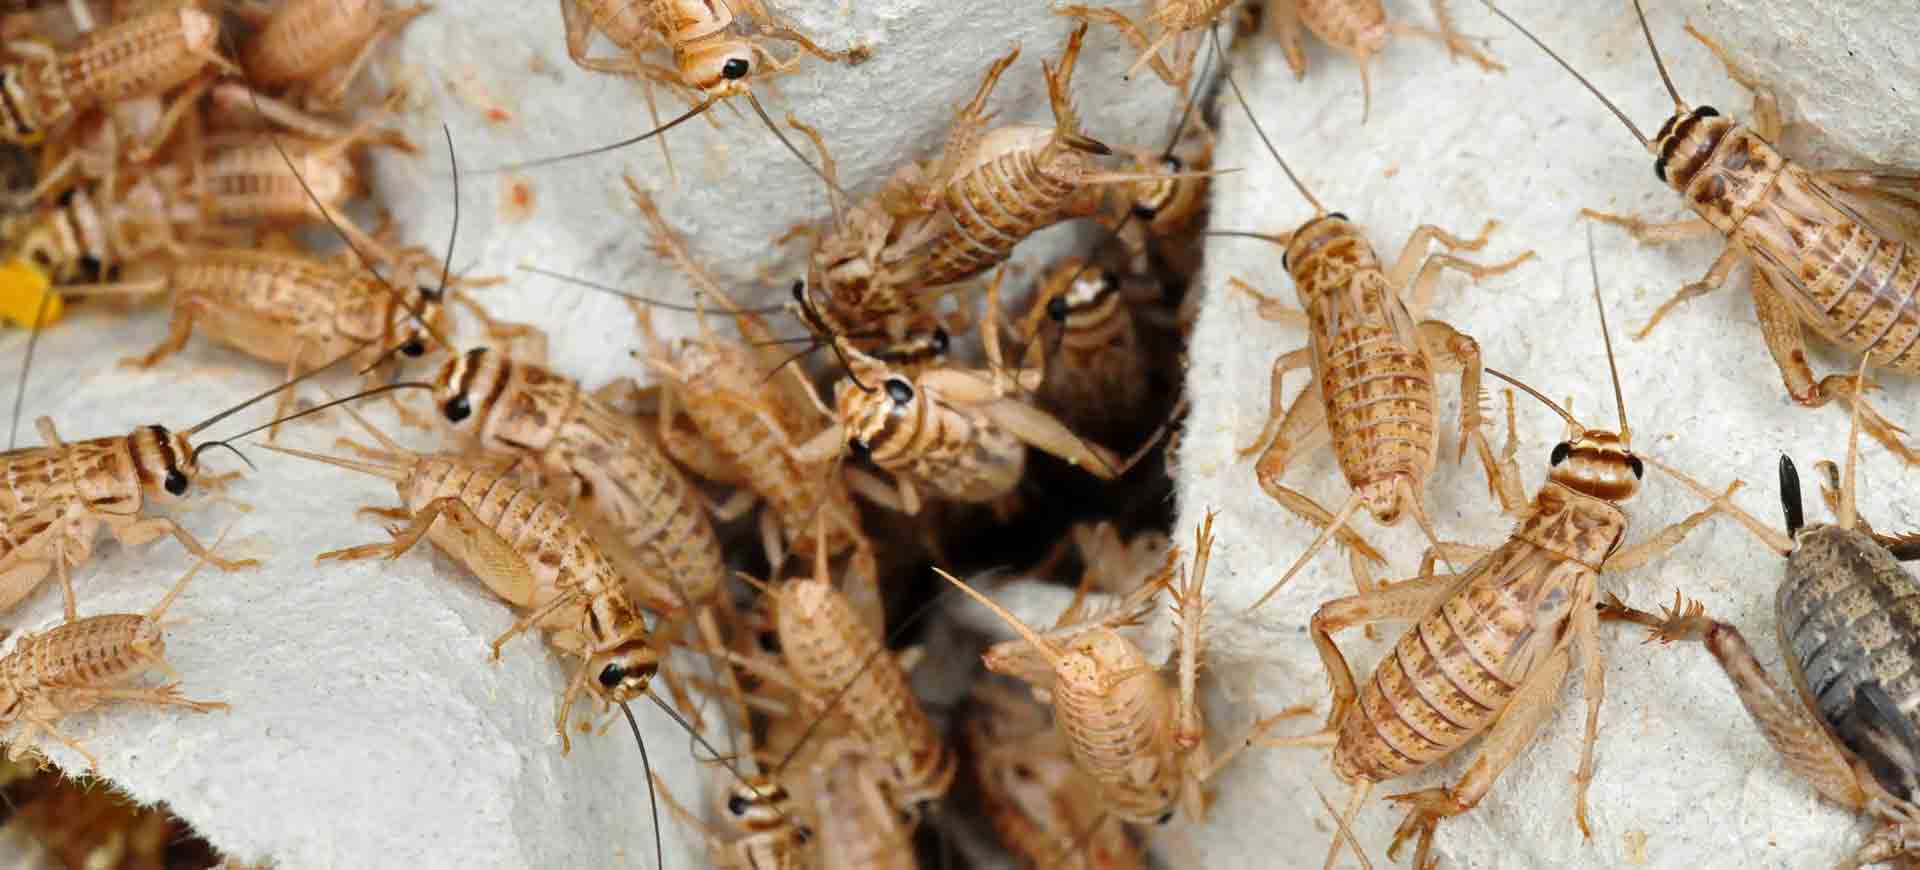 cricket pest control la mesa